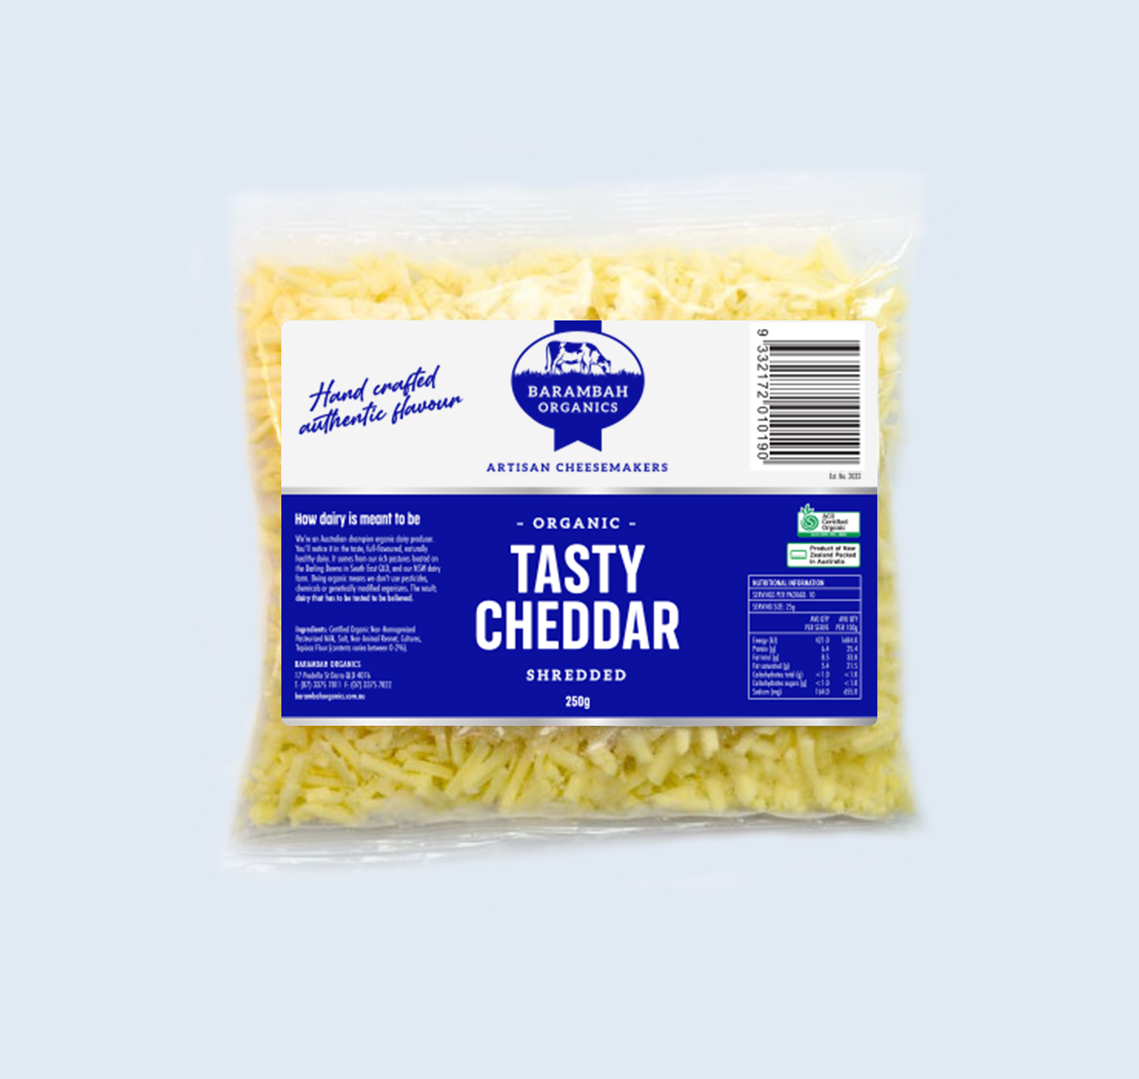 250g of Shredded Tasty Cheddar - Organic Cheddar Cheese - Barambah Organics